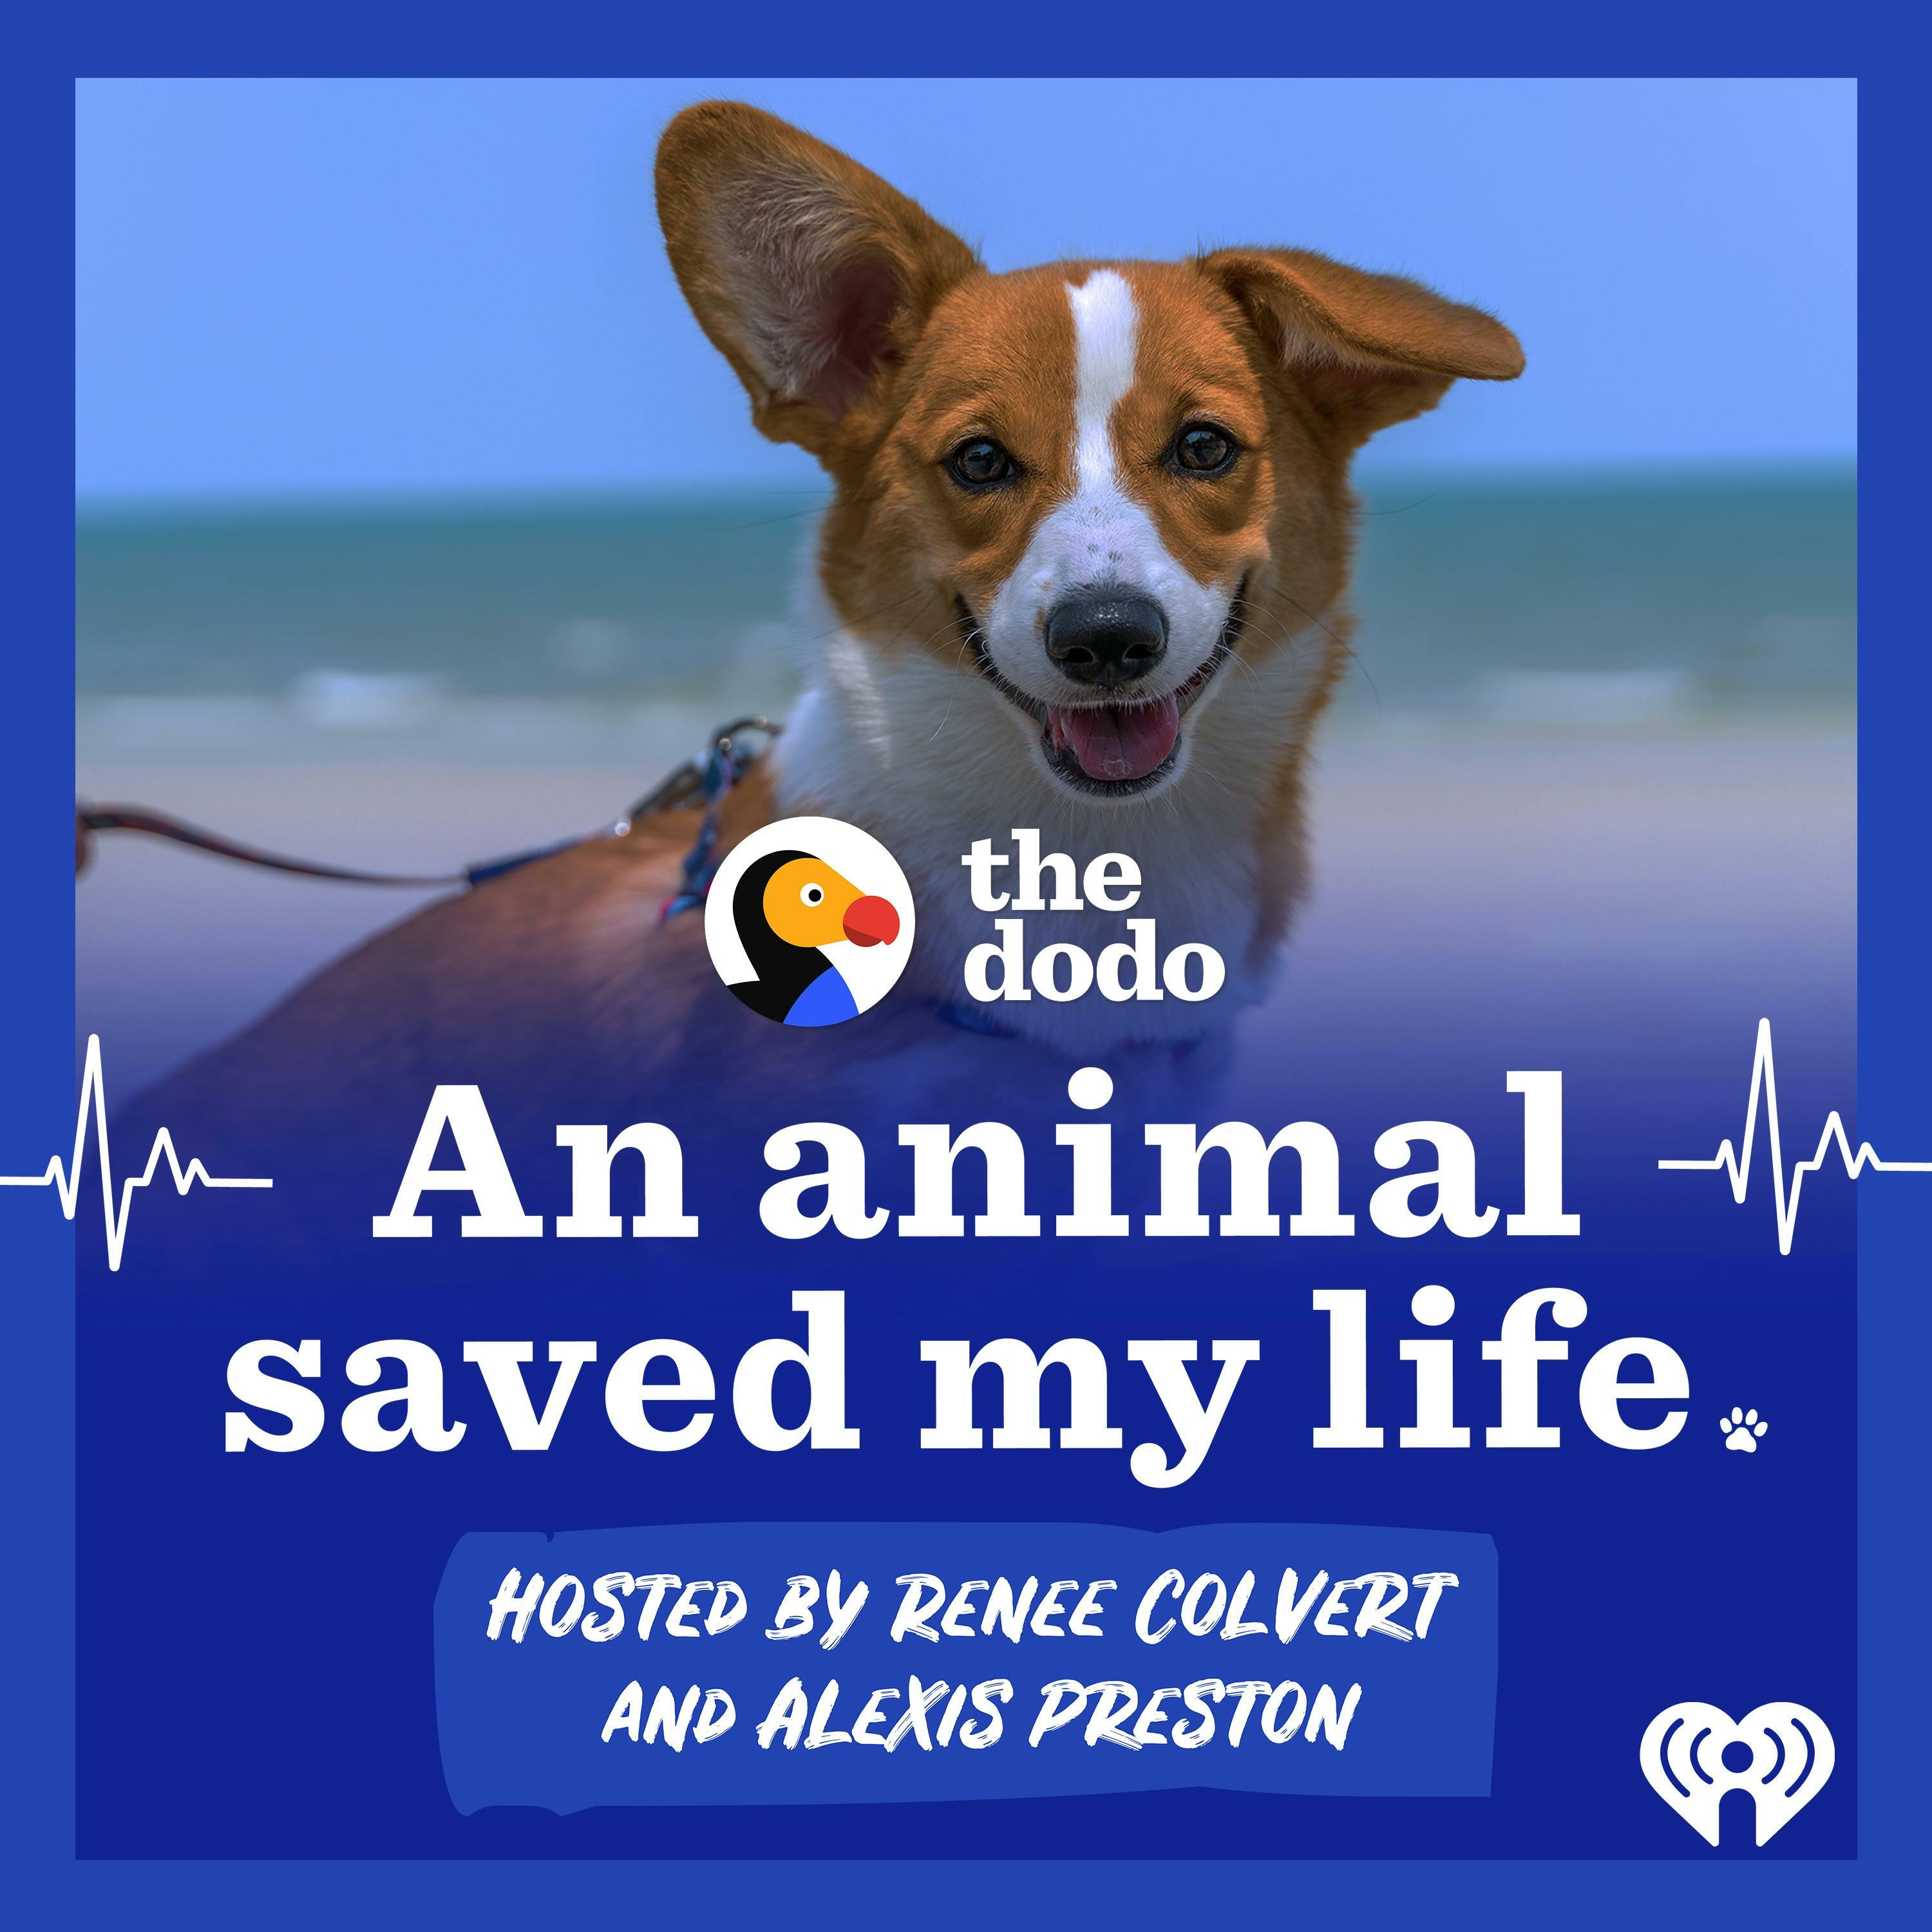 An Animal Saved My Life iHeart image